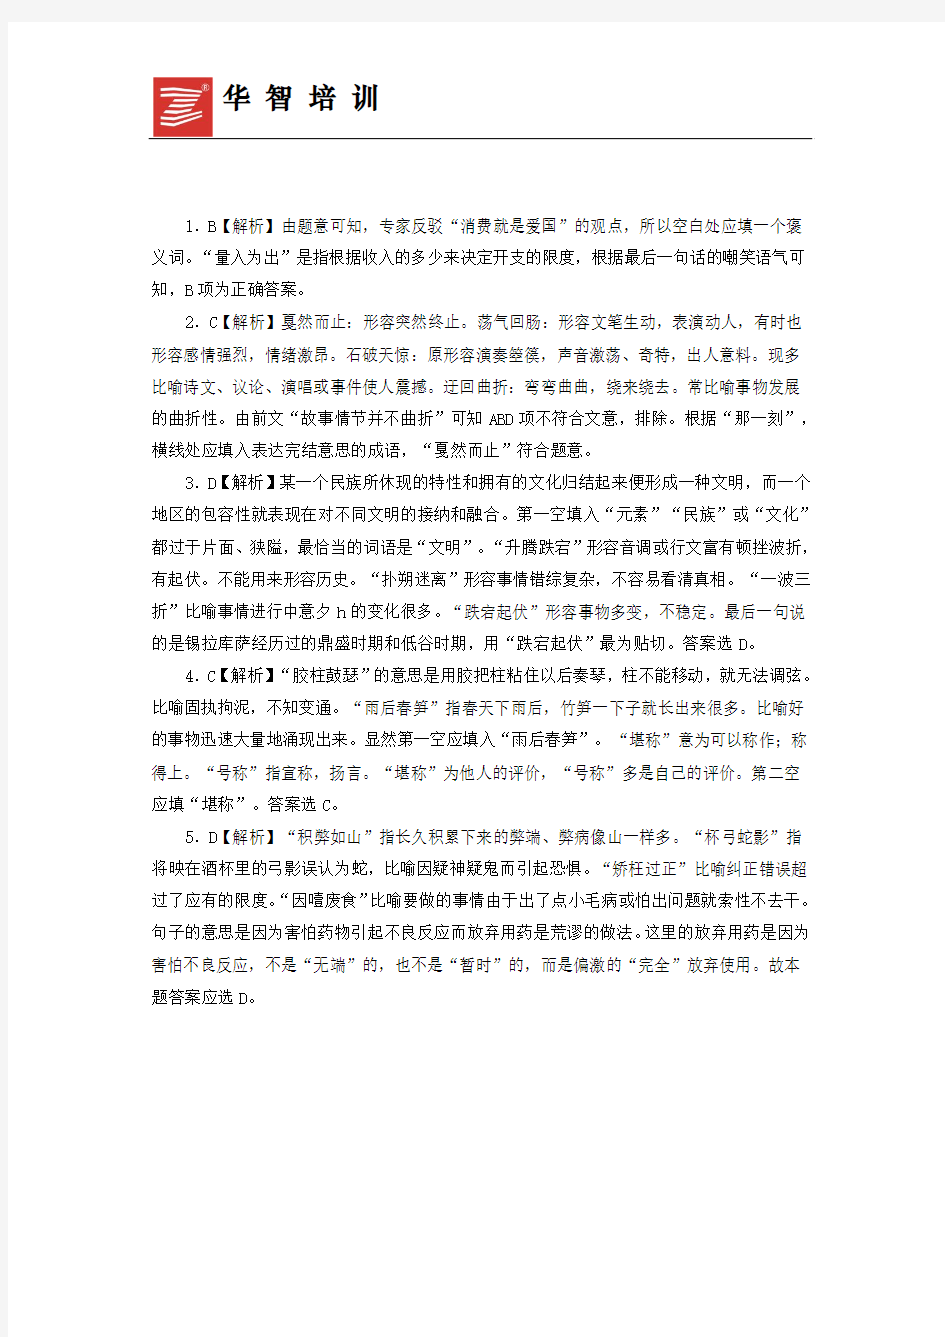 2016上海公务员考试行测每日练习：选词填空(五)